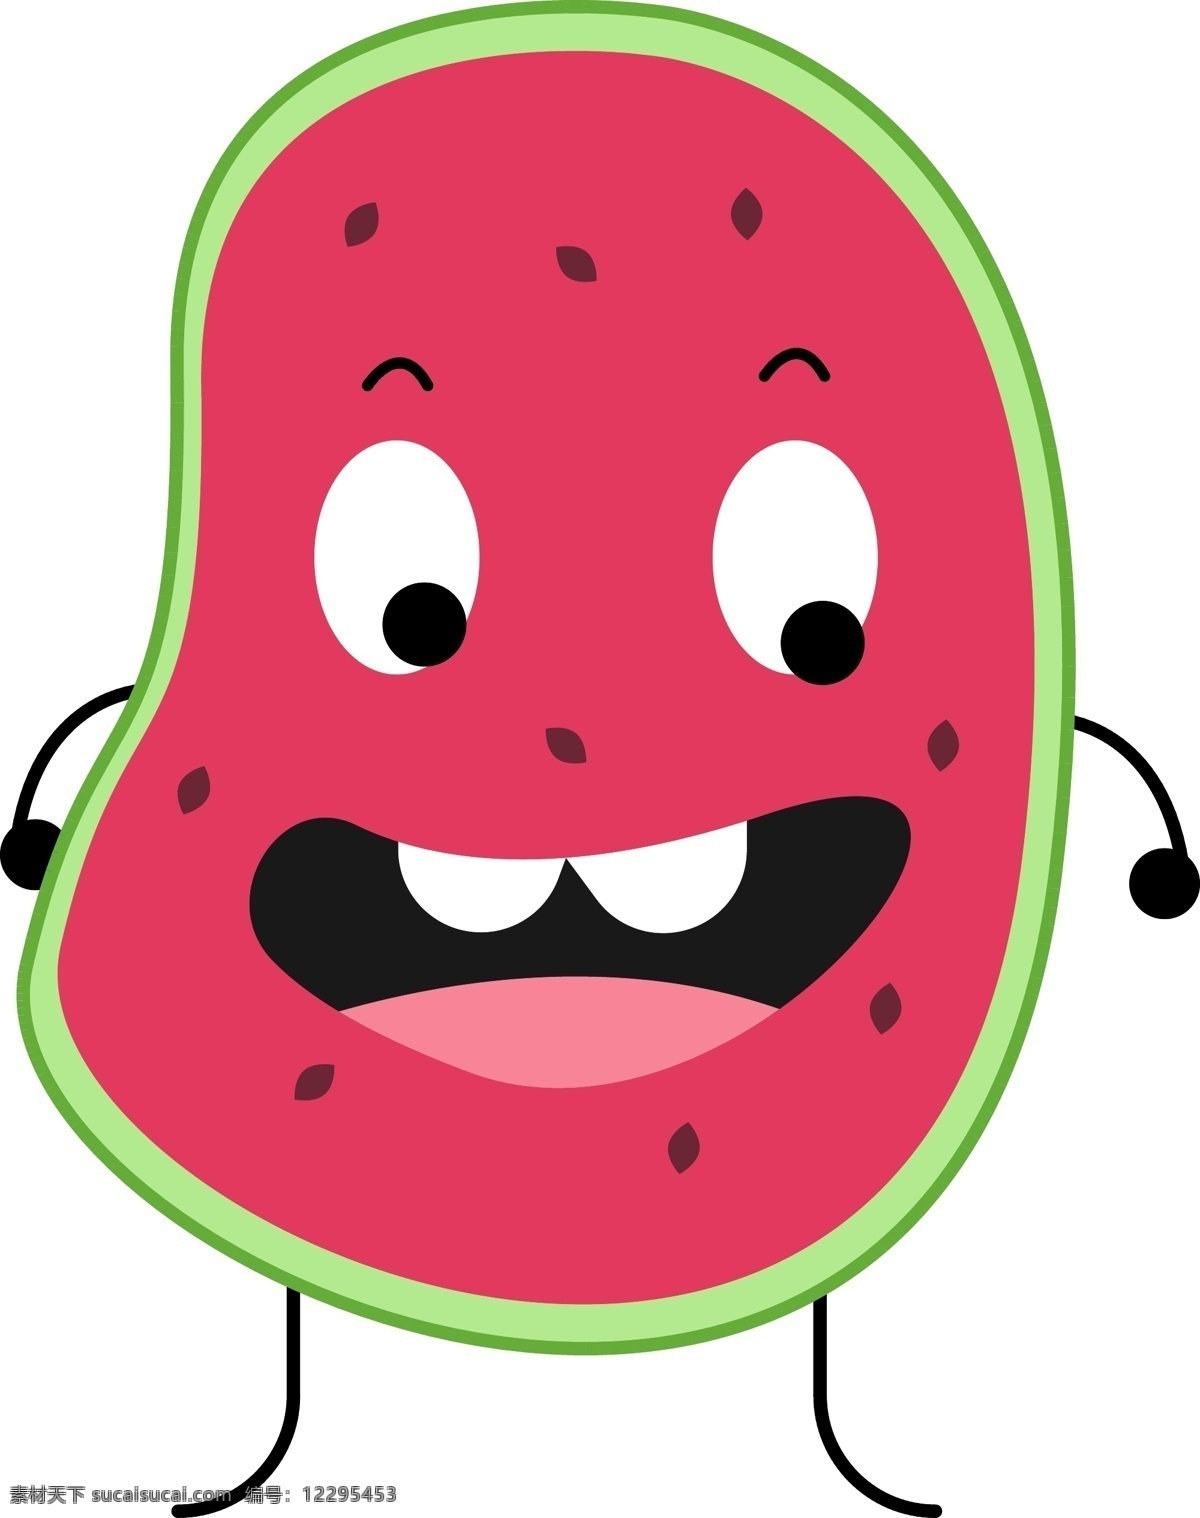 西瓜 卡通 水果 笑脸 可爱 元素 矢量 红色 创意